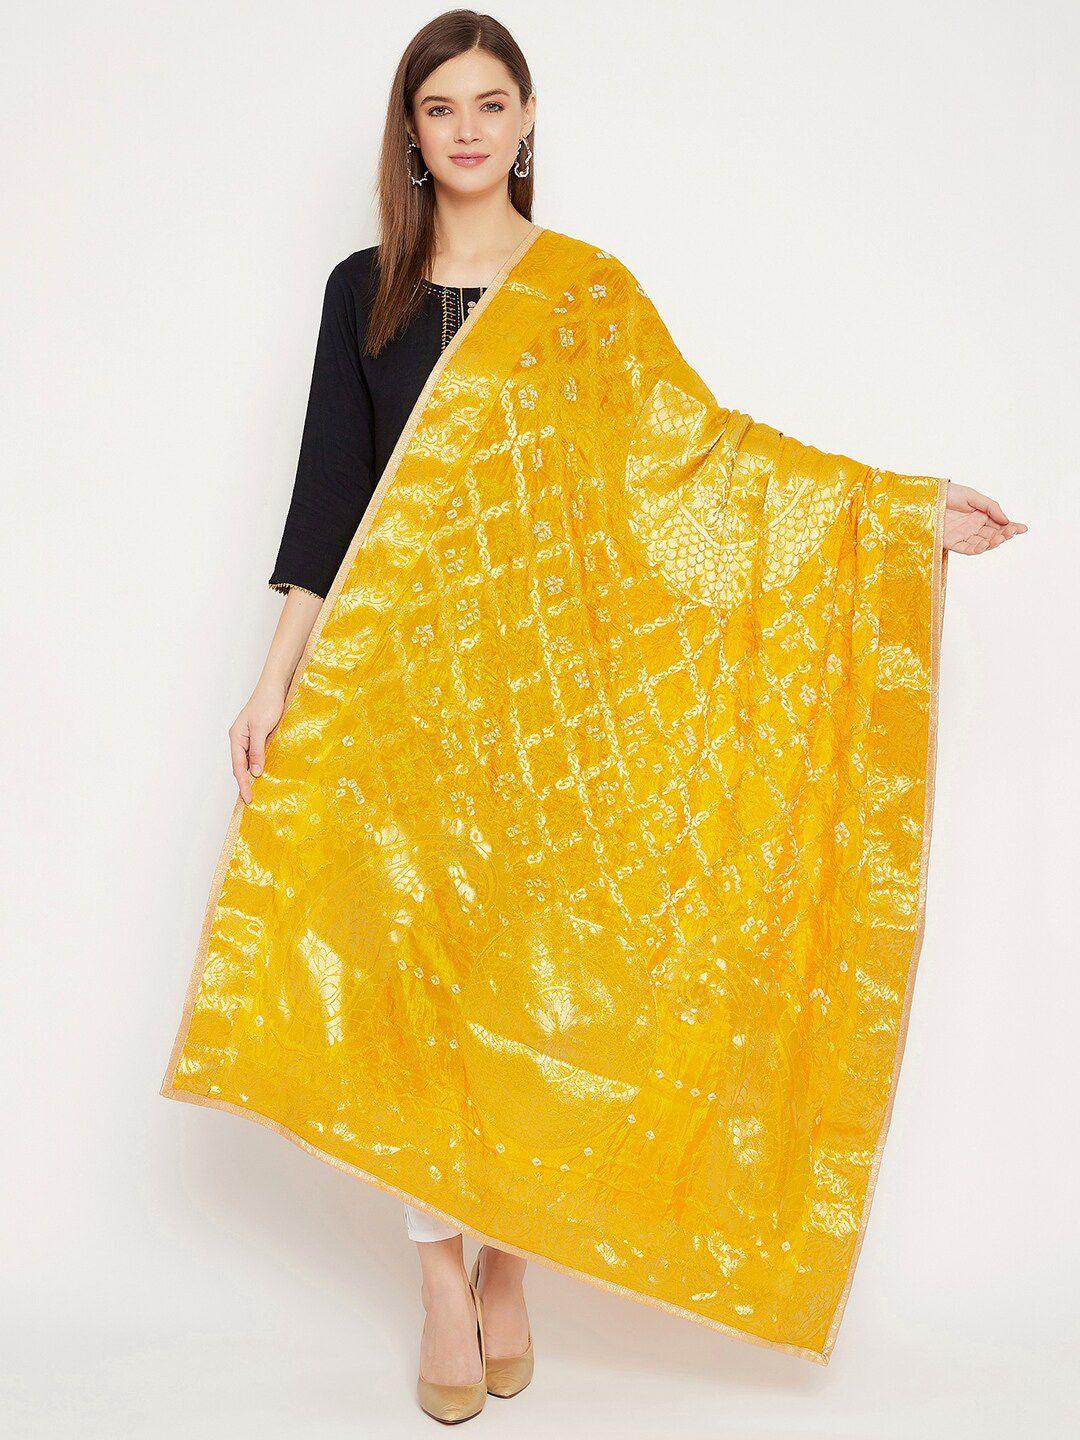 clora creation yellow & off white woven design dupatta with gotta patti